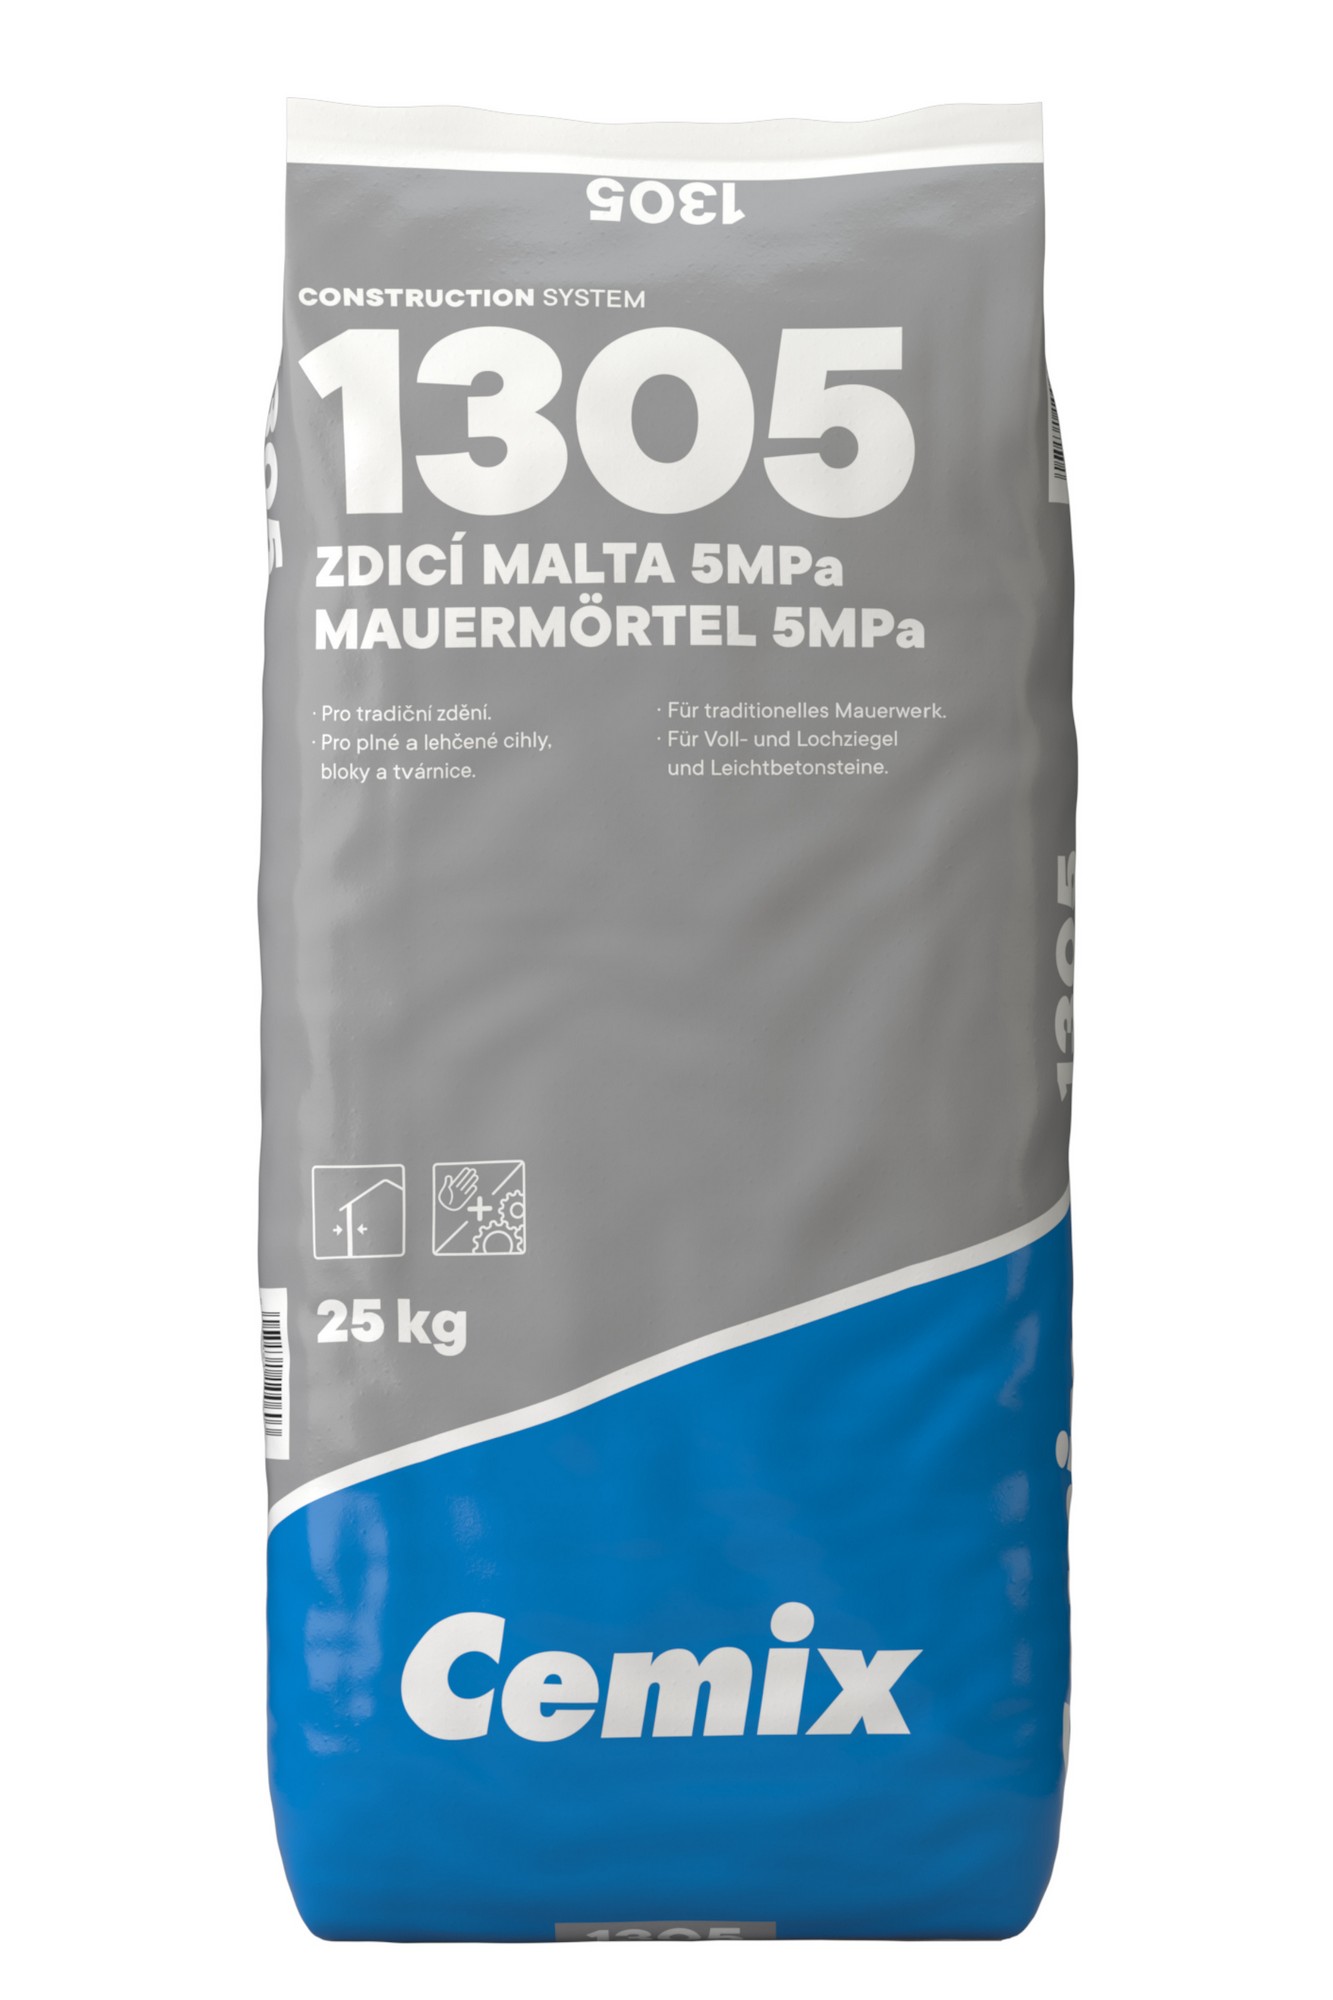 Malta zdicí Cemix 1305 25 kg